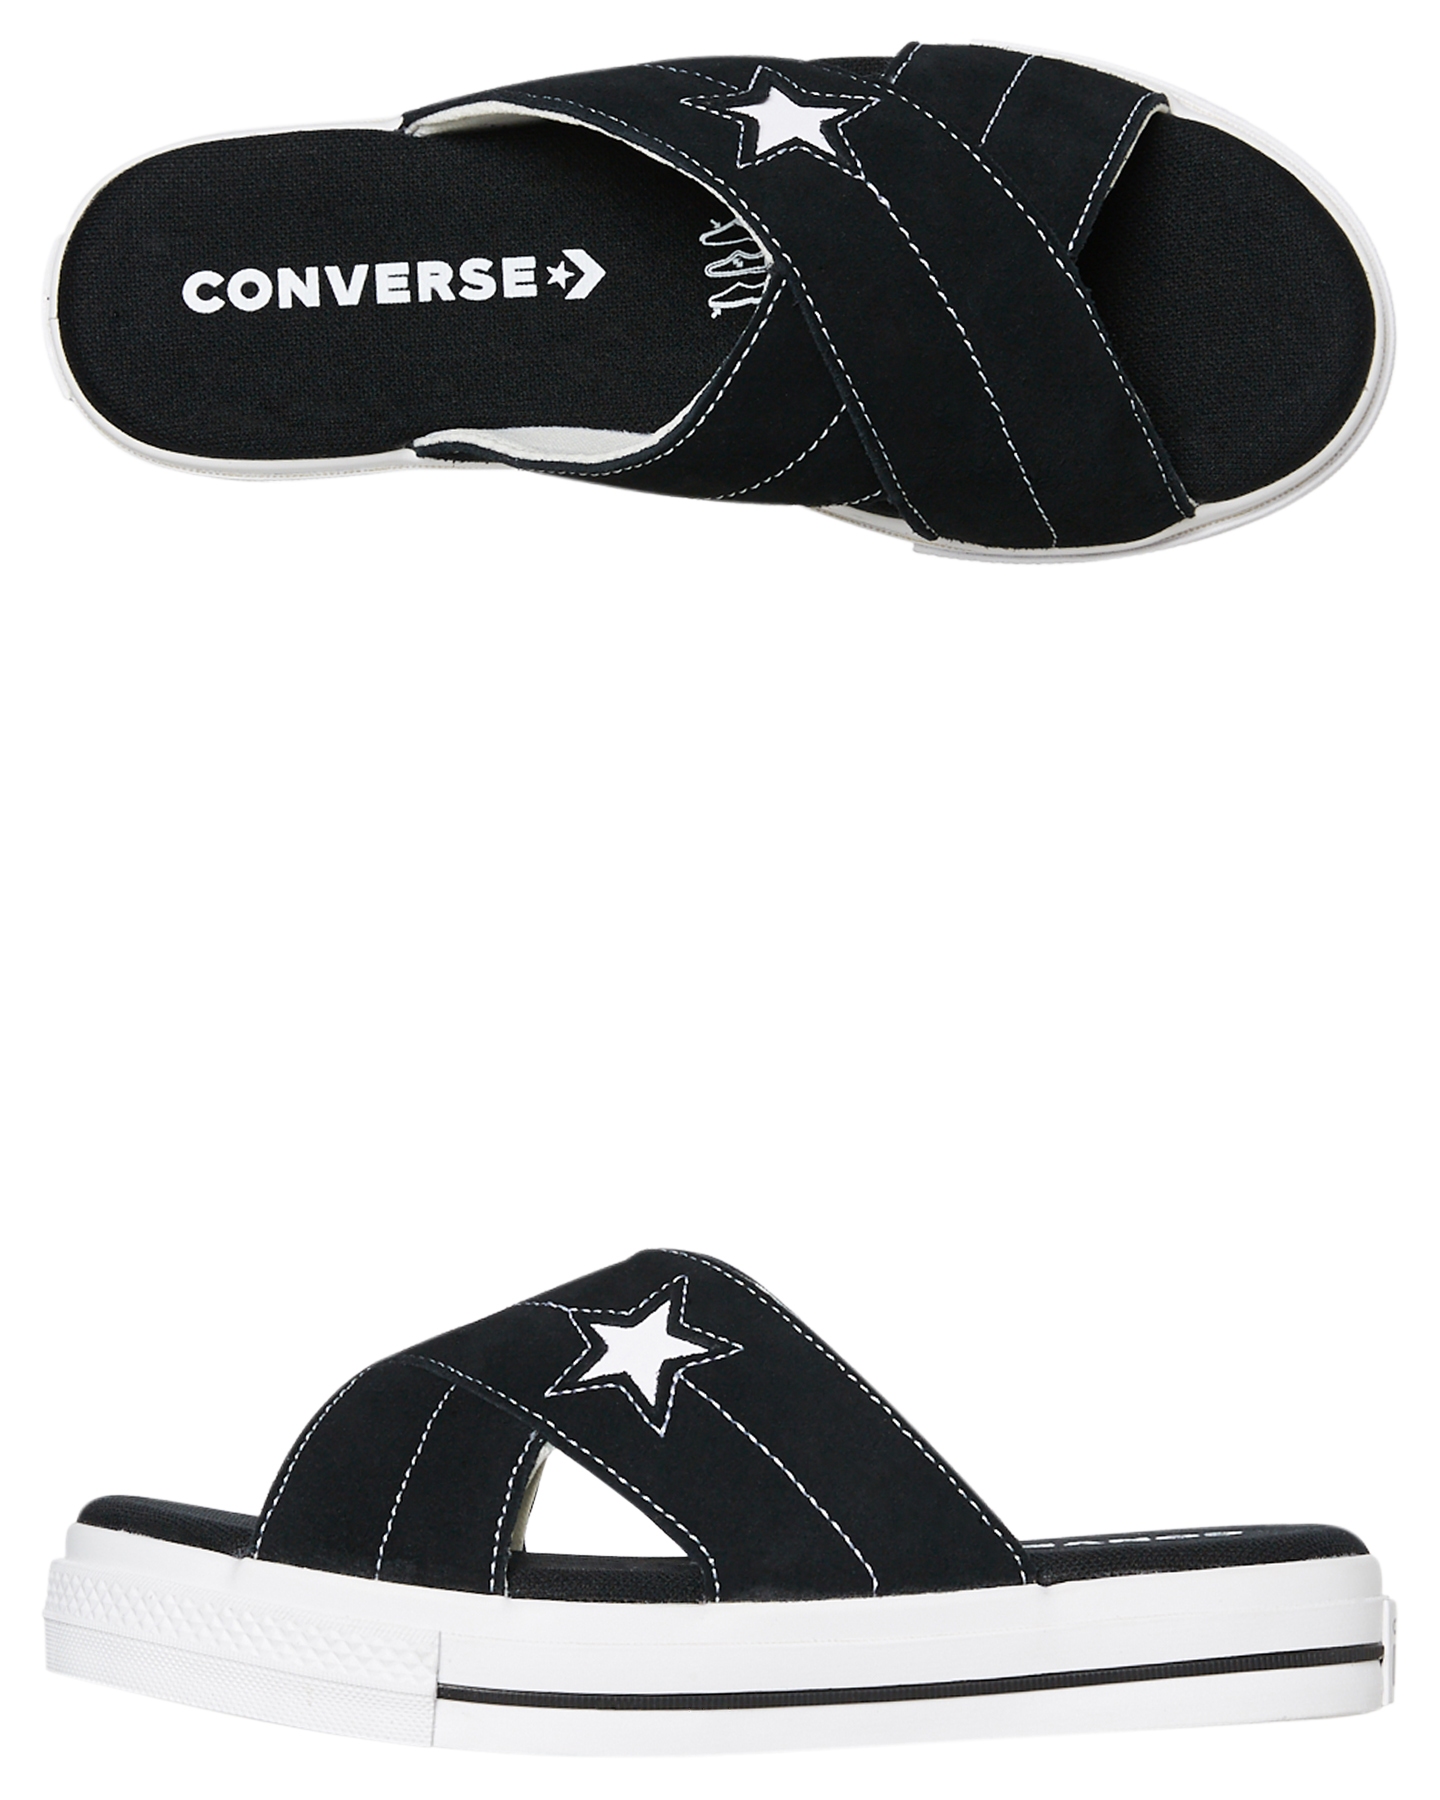 converse flip flops